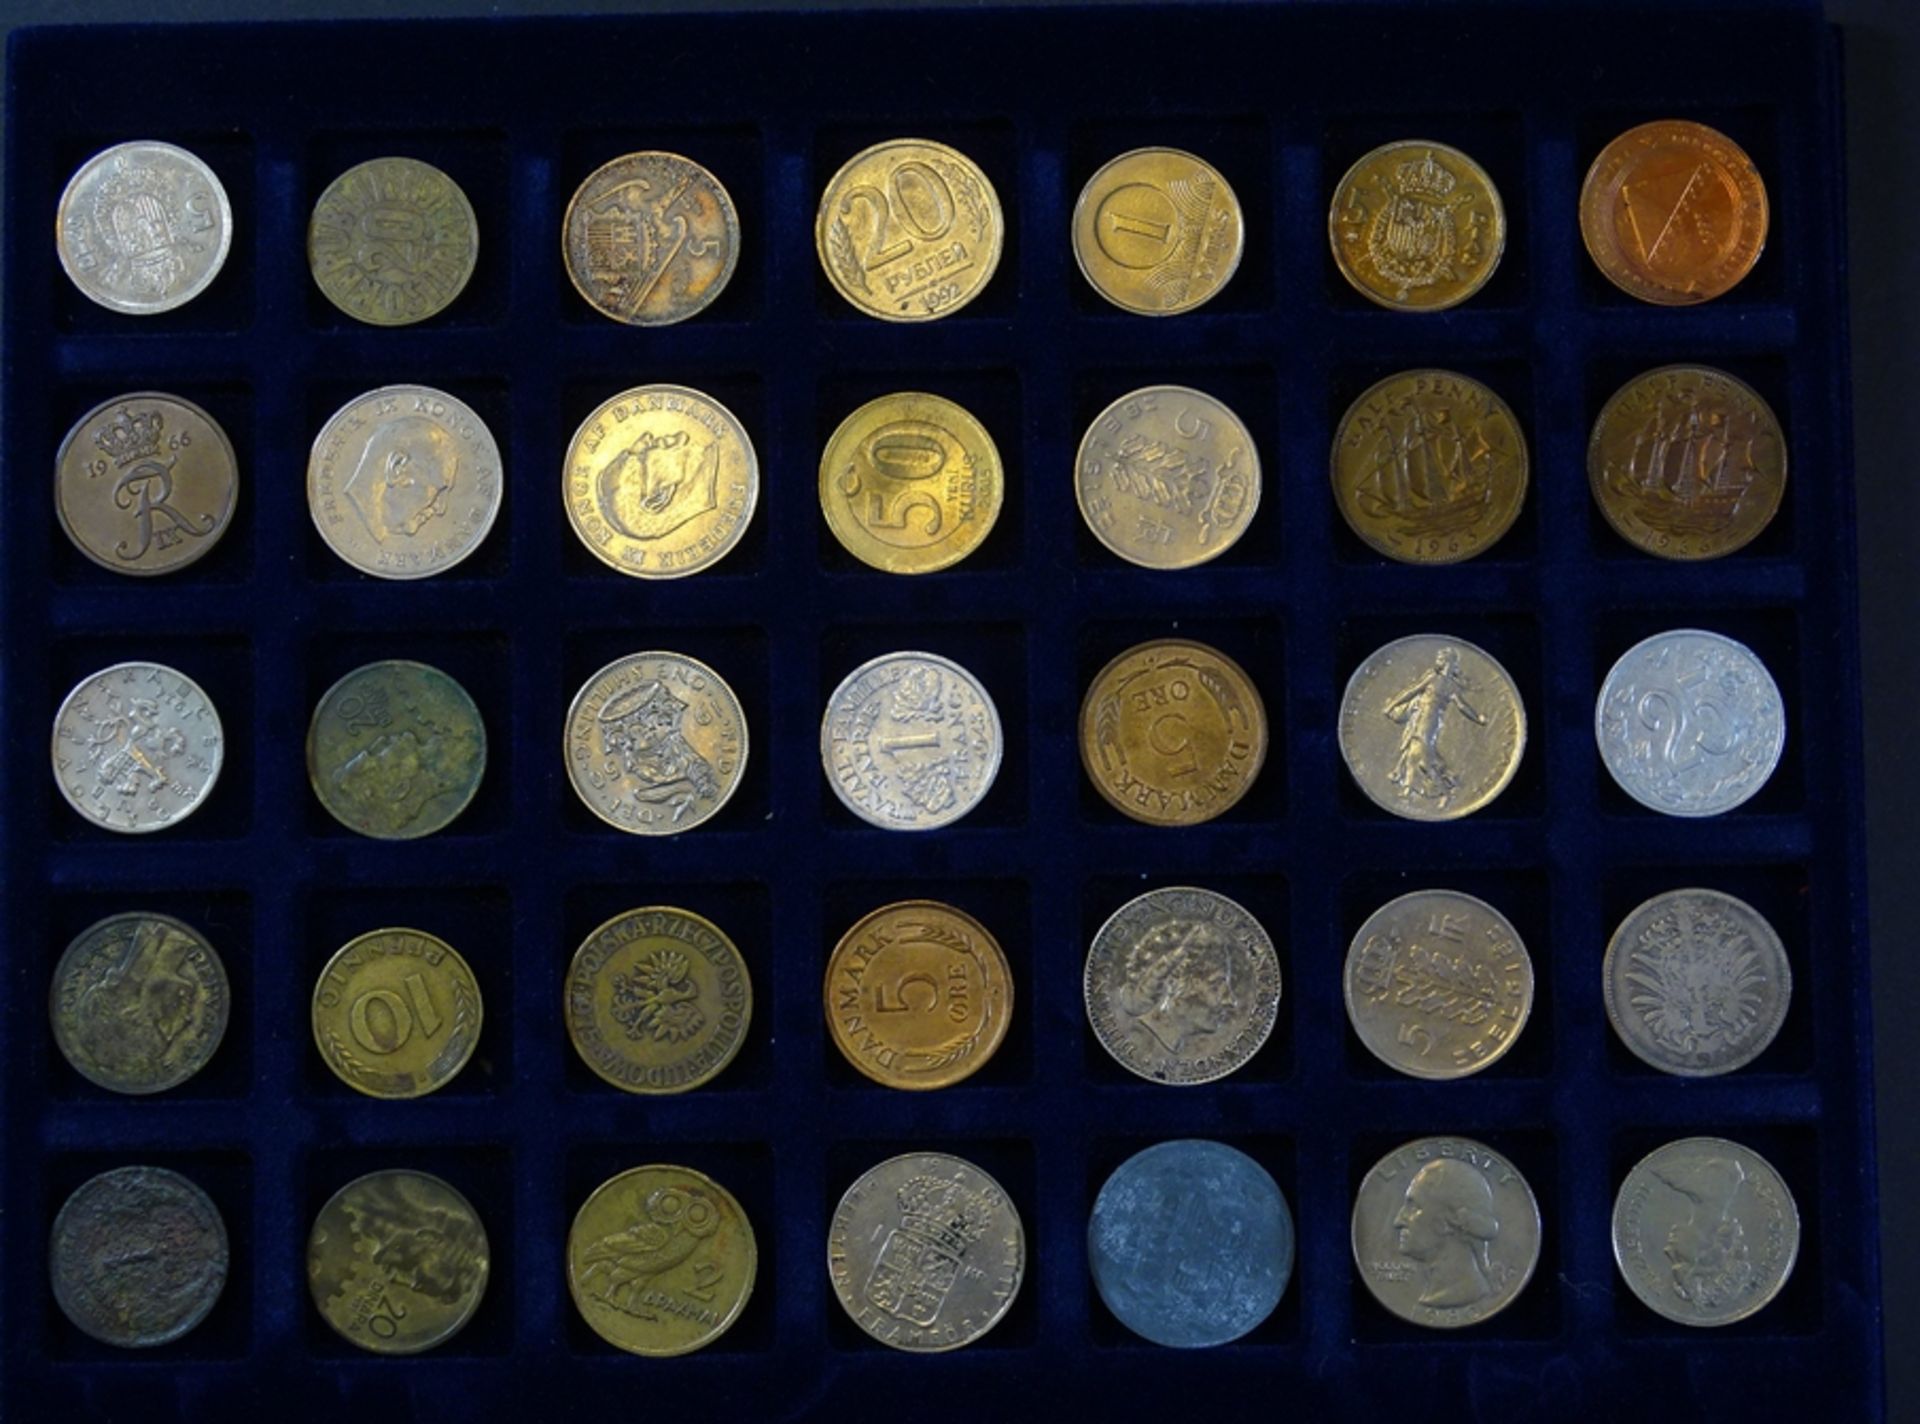 kl. Koffer mit Münzen und Medaillen aus aller Welt, ca. 196 Stück, Koffer 25 x 20cm, wenige Silber - Bild 4 aus 10